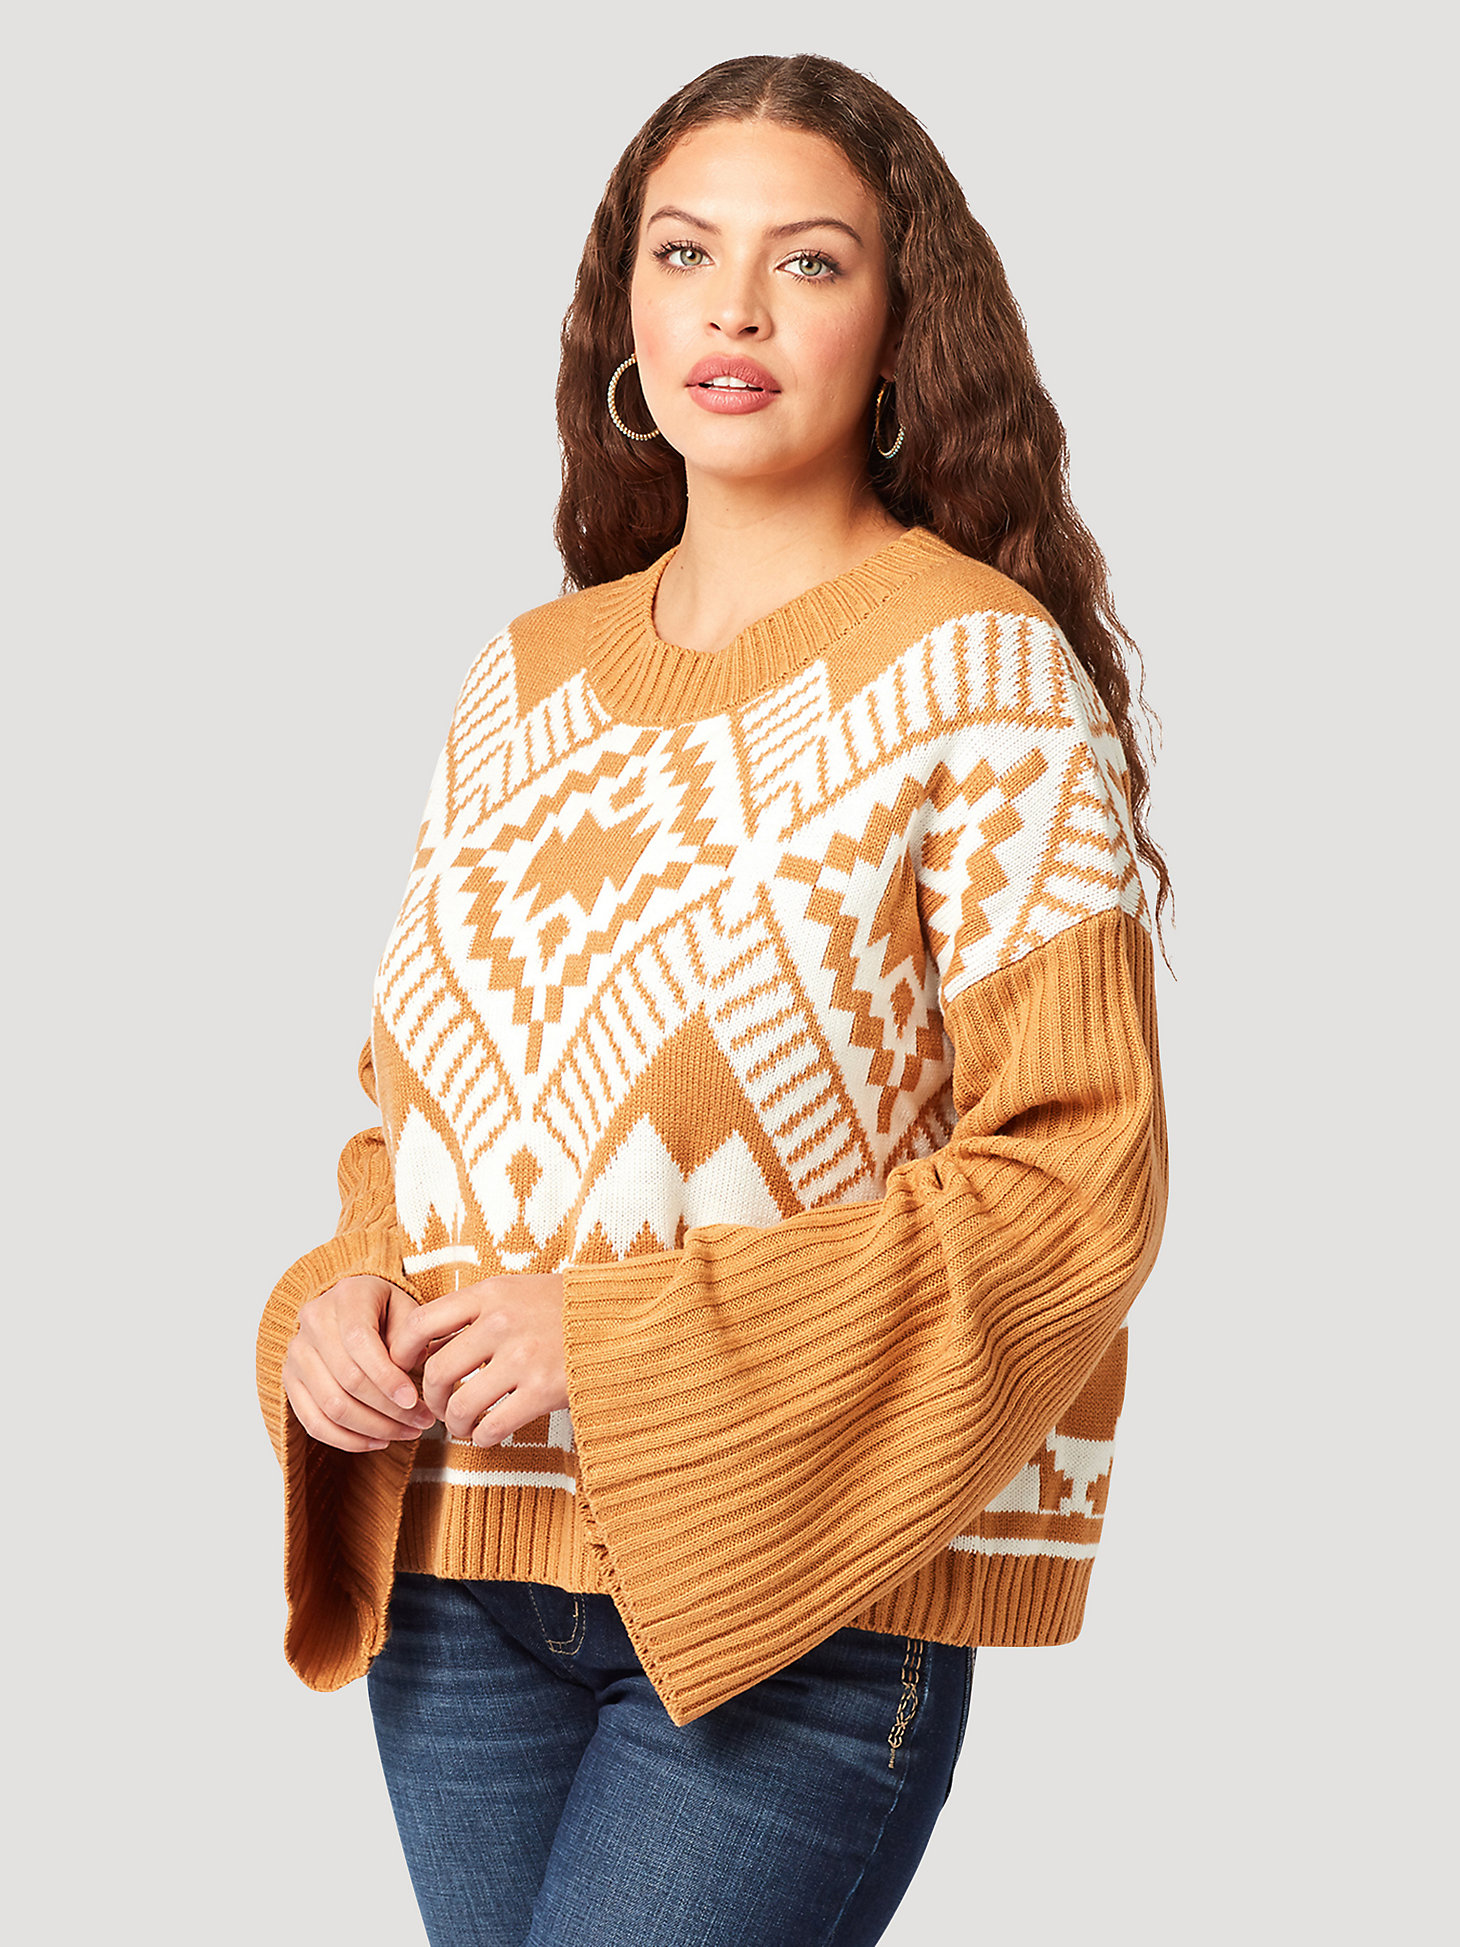 Women's Wrangler Southwestern Bell Sleeve Sweater in Mustard alternative view 1